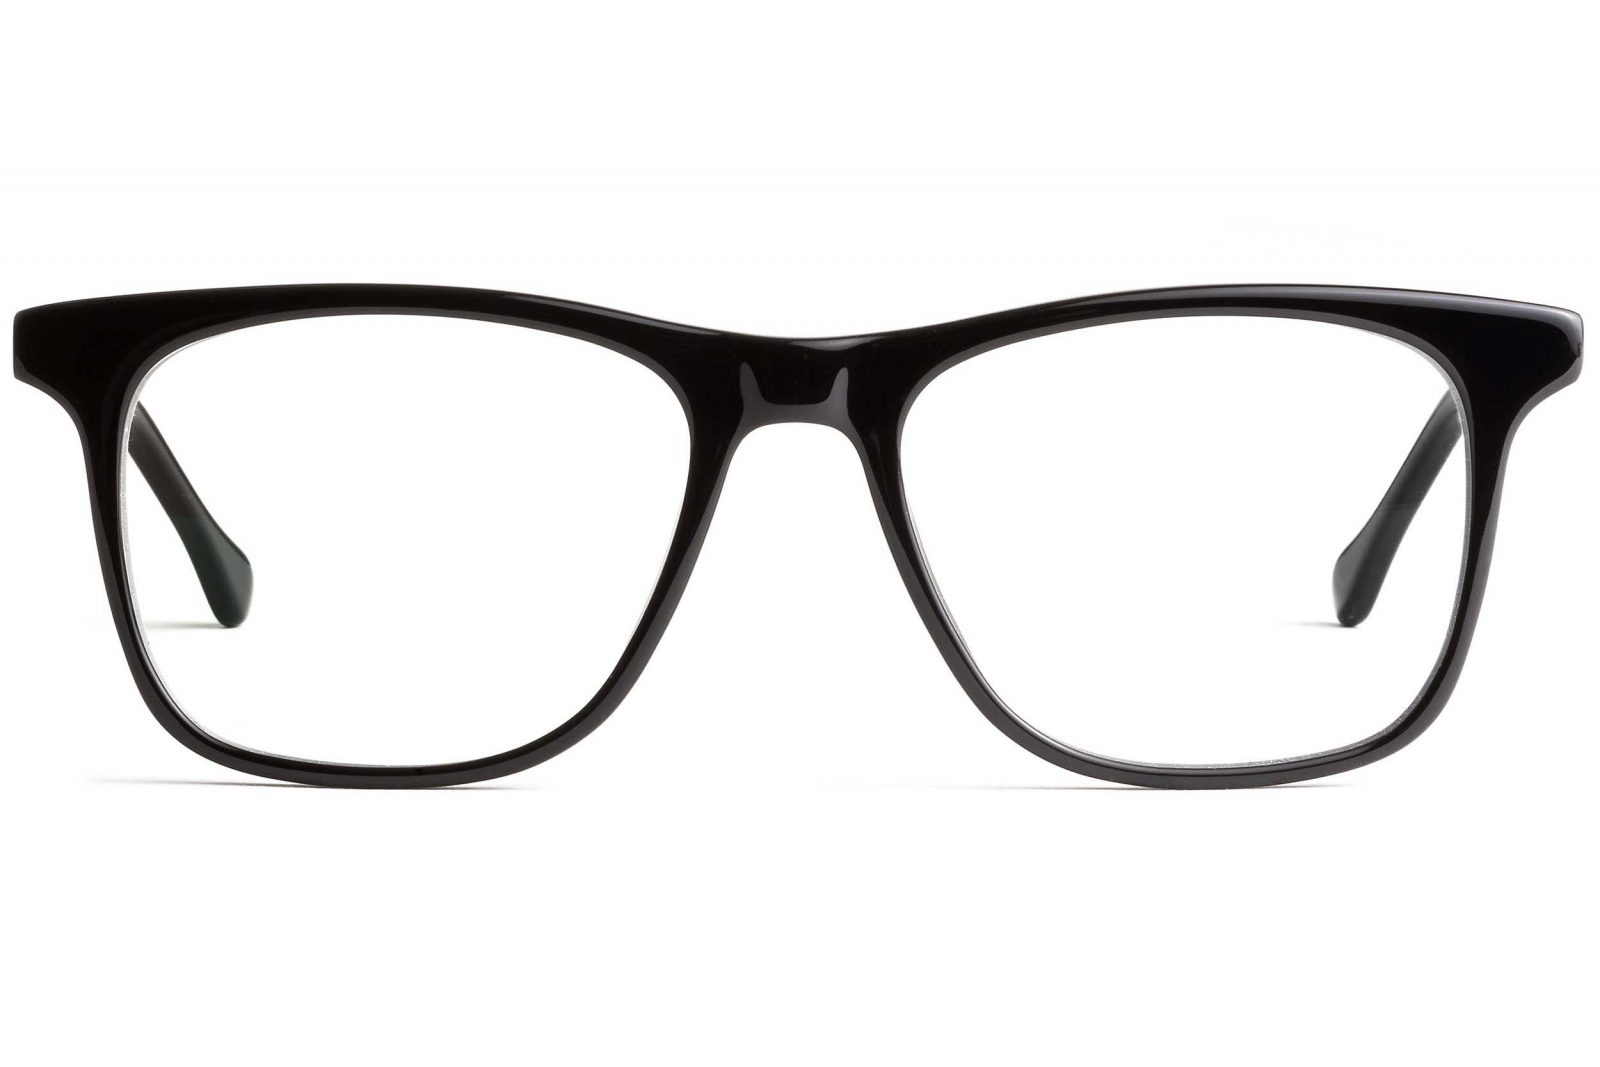 Big & Oversized Glasses: Trend Overview & Sample Frames